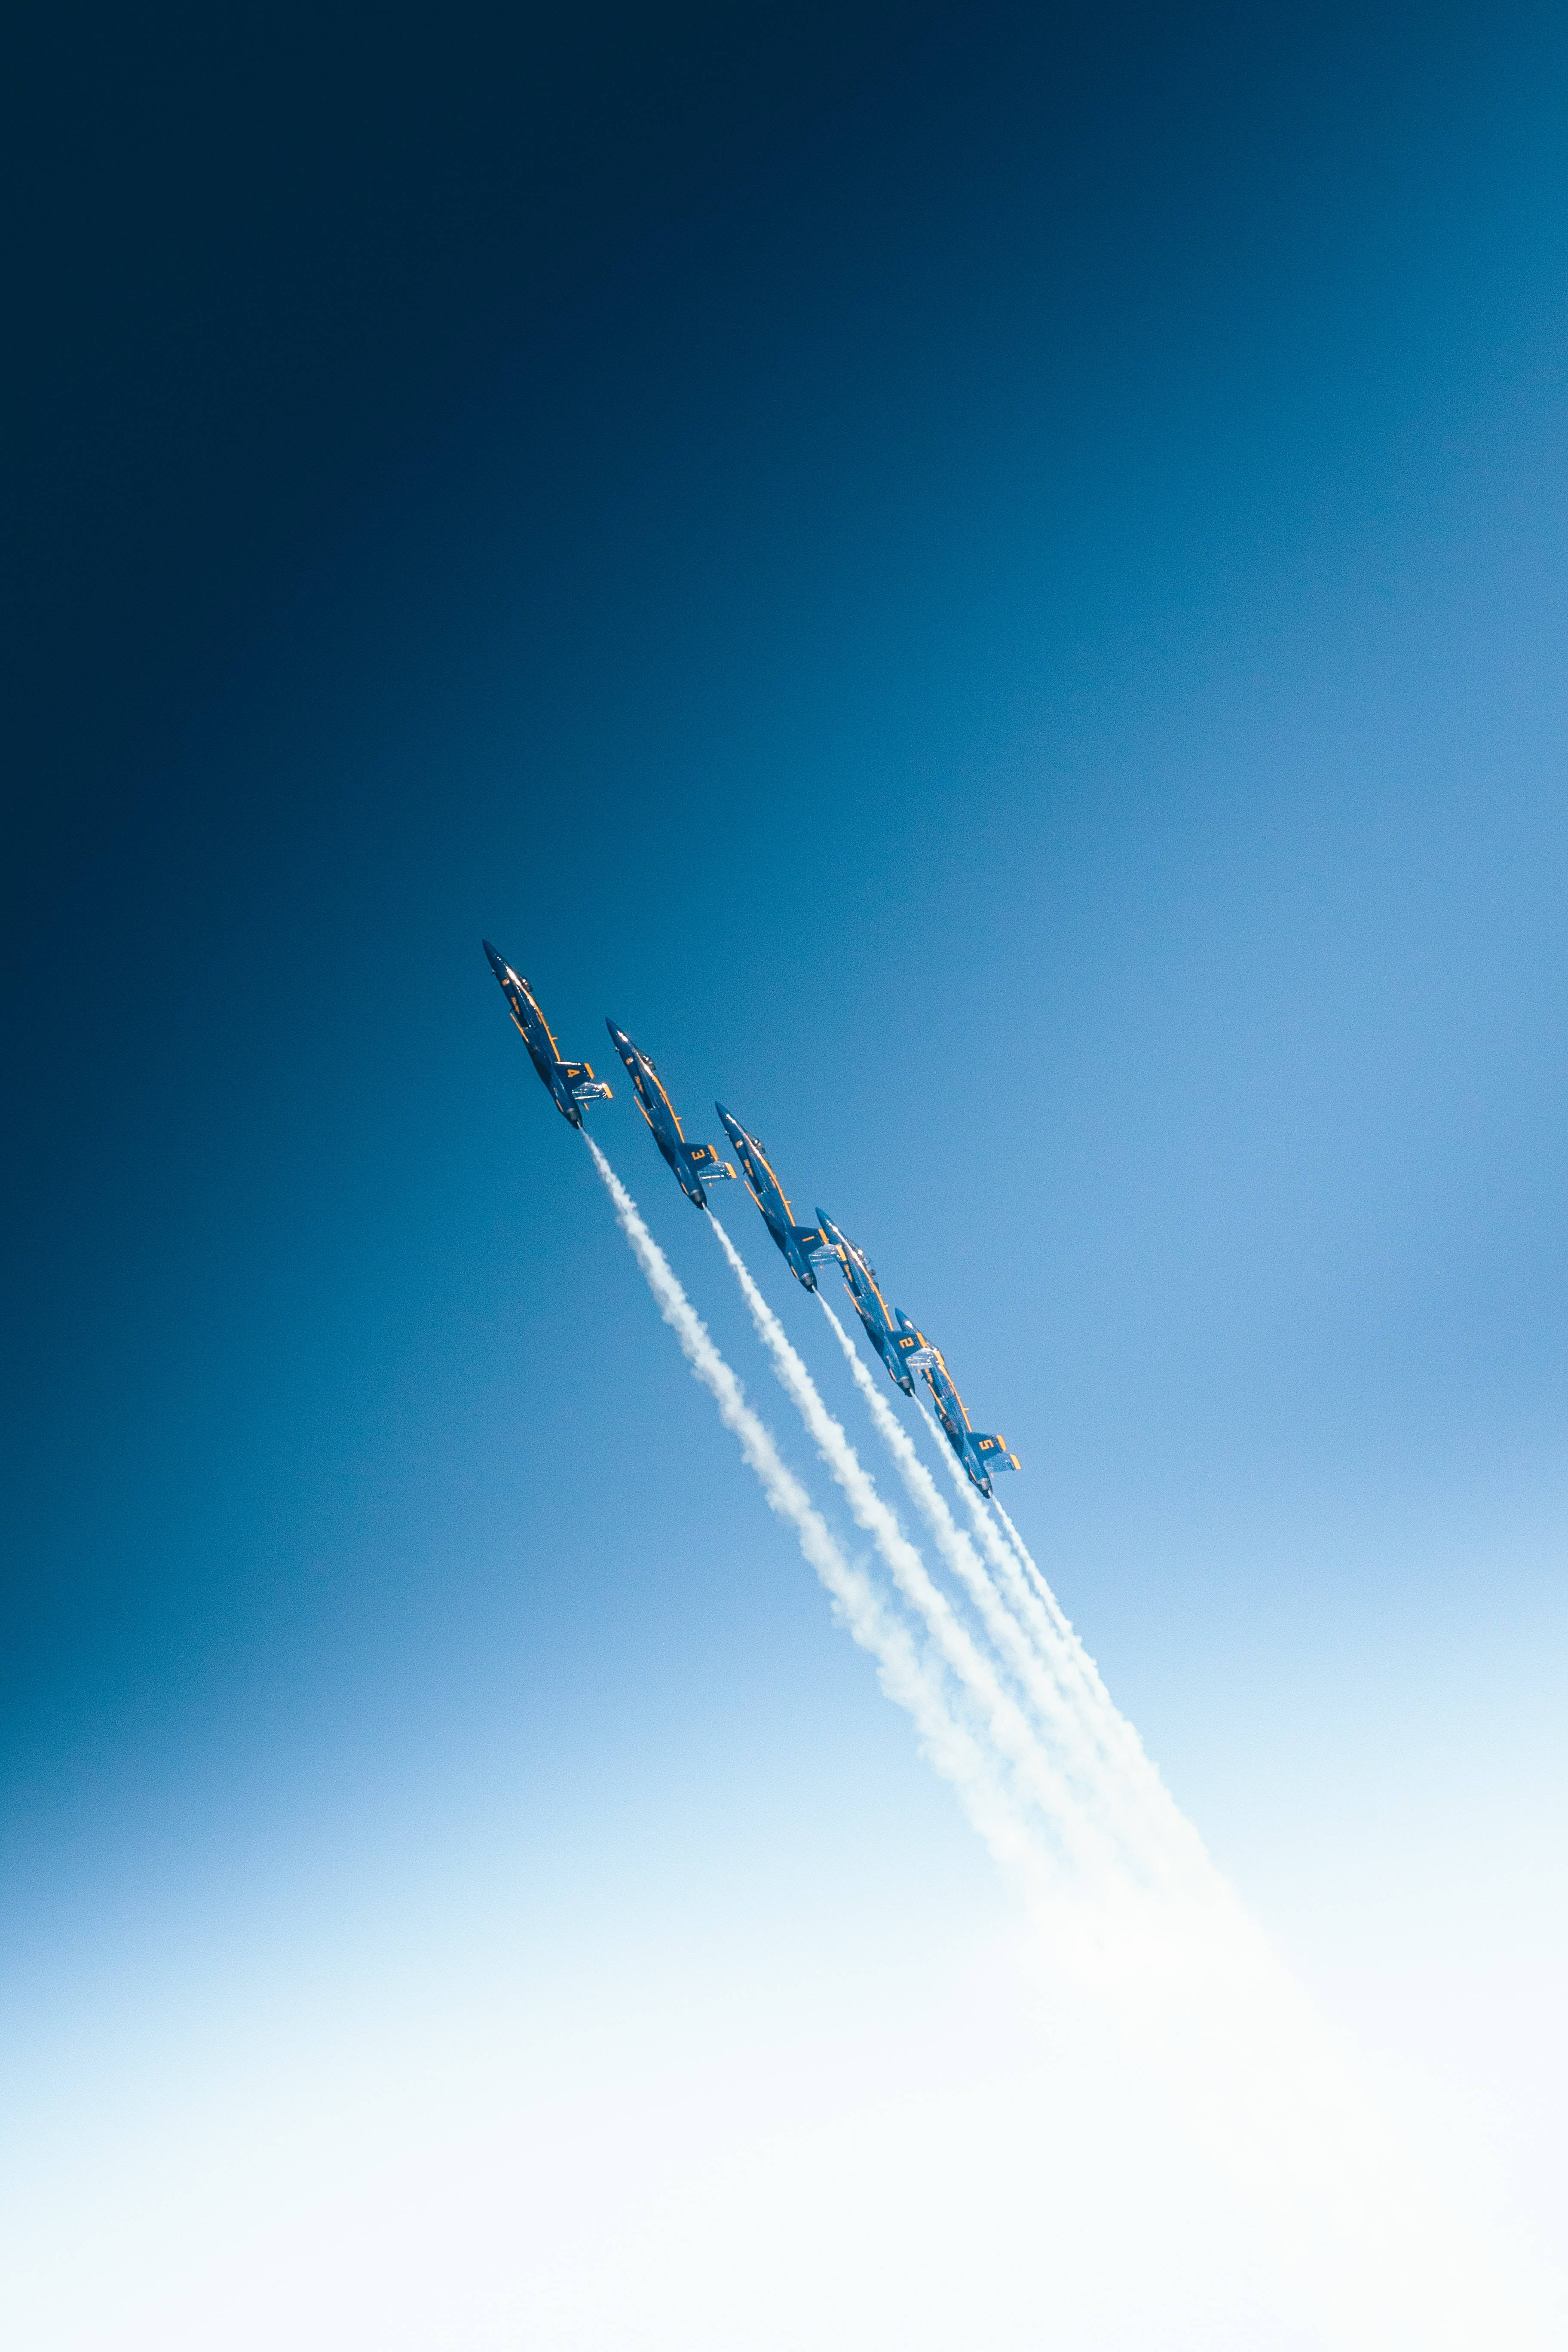 4k Ultra Hd Phone Jet Planes Blue Sky Background